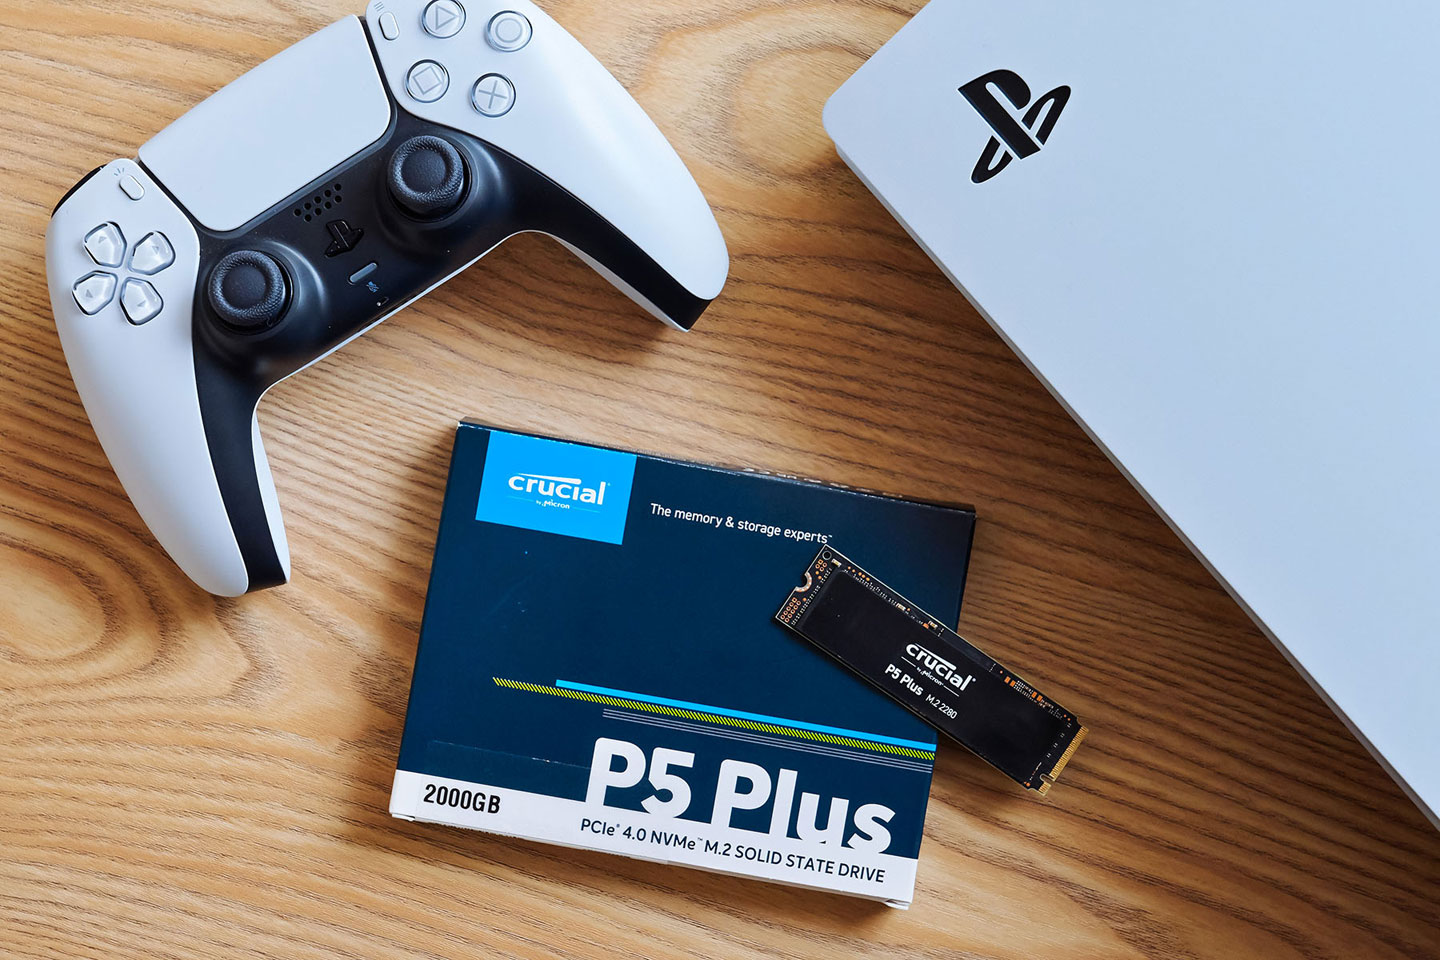 透過美光 Crucial P5 Plus 可以一次升級 PS5 的儲容量，同時取效能也能符合 PS5 系統的規格，甚至速度更勝內建 SSD！